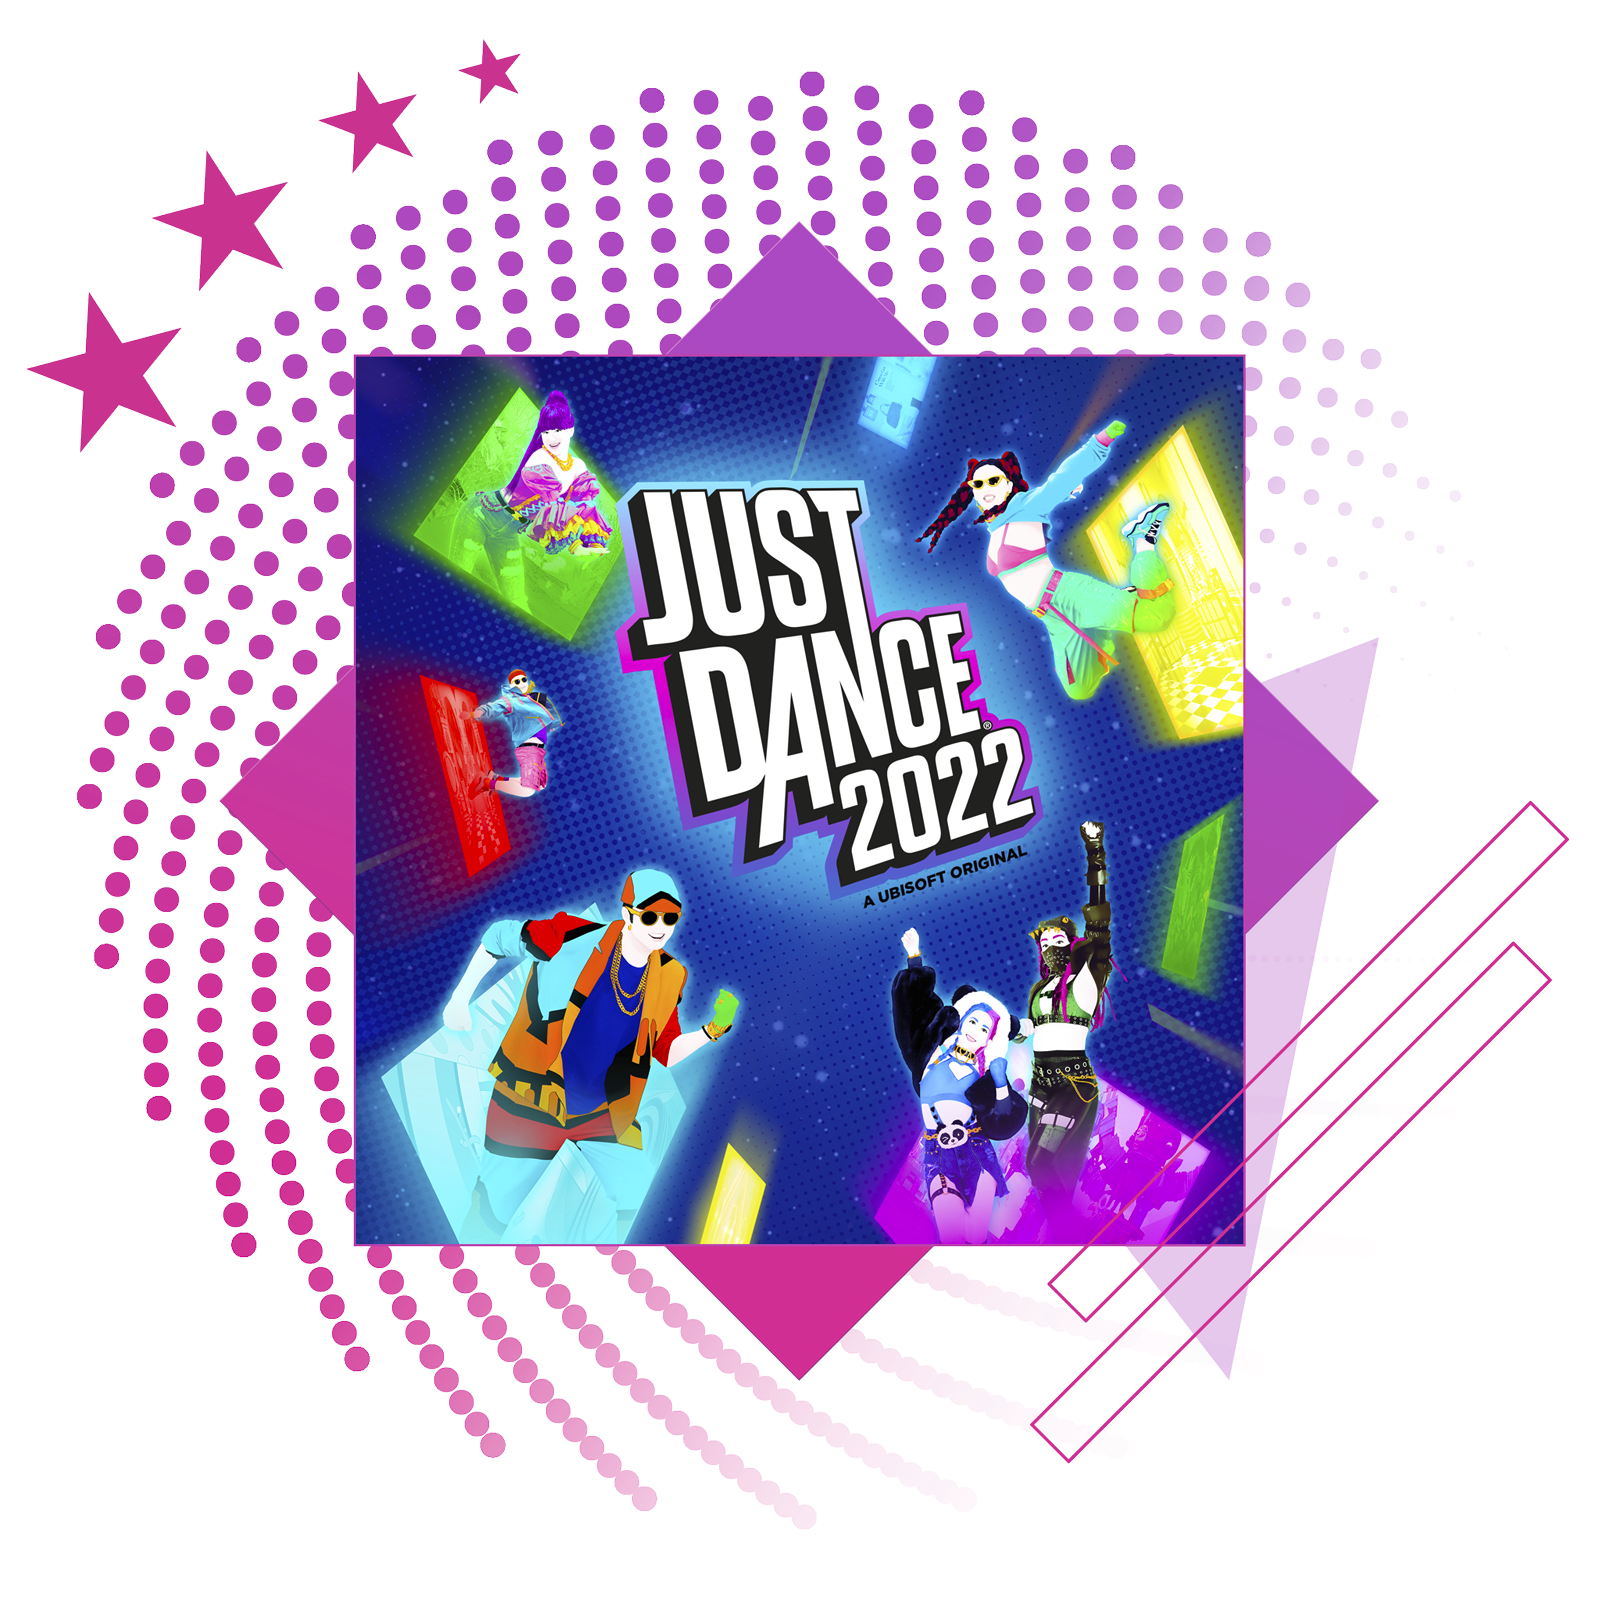 Najbolje ritmičke igre, naslovna slika s glavnom ilustracijom iz igre Just Dance 2022.